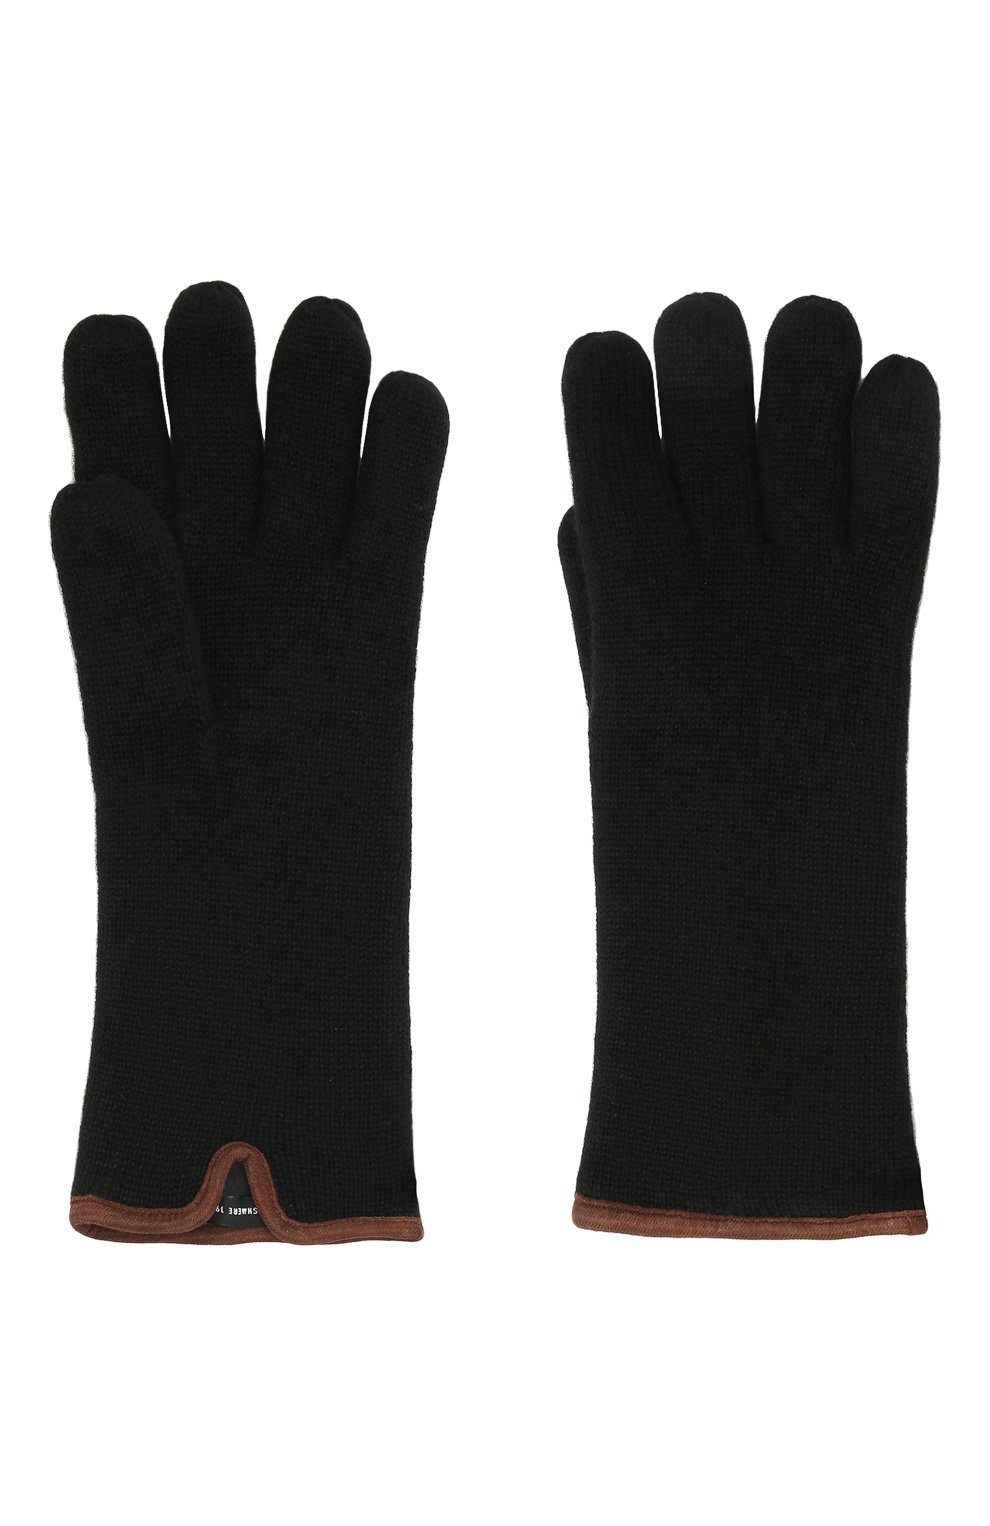 Мужские кашемировые перчатки SVEVO черного цвета, арт. 0158USA21/MP01/2 | Фото 2 (Материал: Текстиль, Кашемир, Шерсть; Кросс-КТ: Трикотаж)